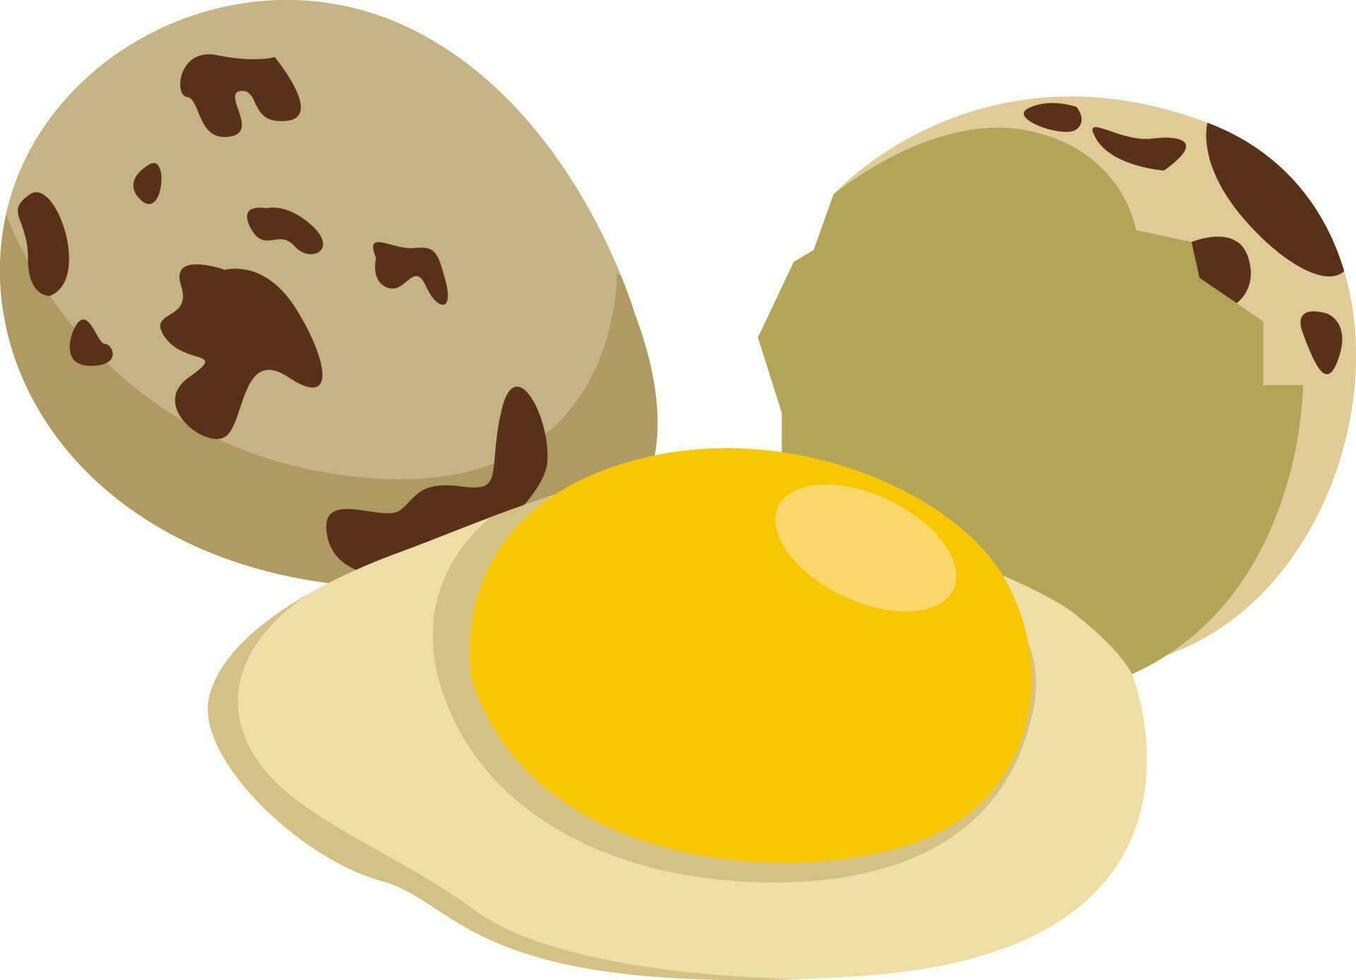 ovos de codorna, ilustração, vetor em fundo branco.